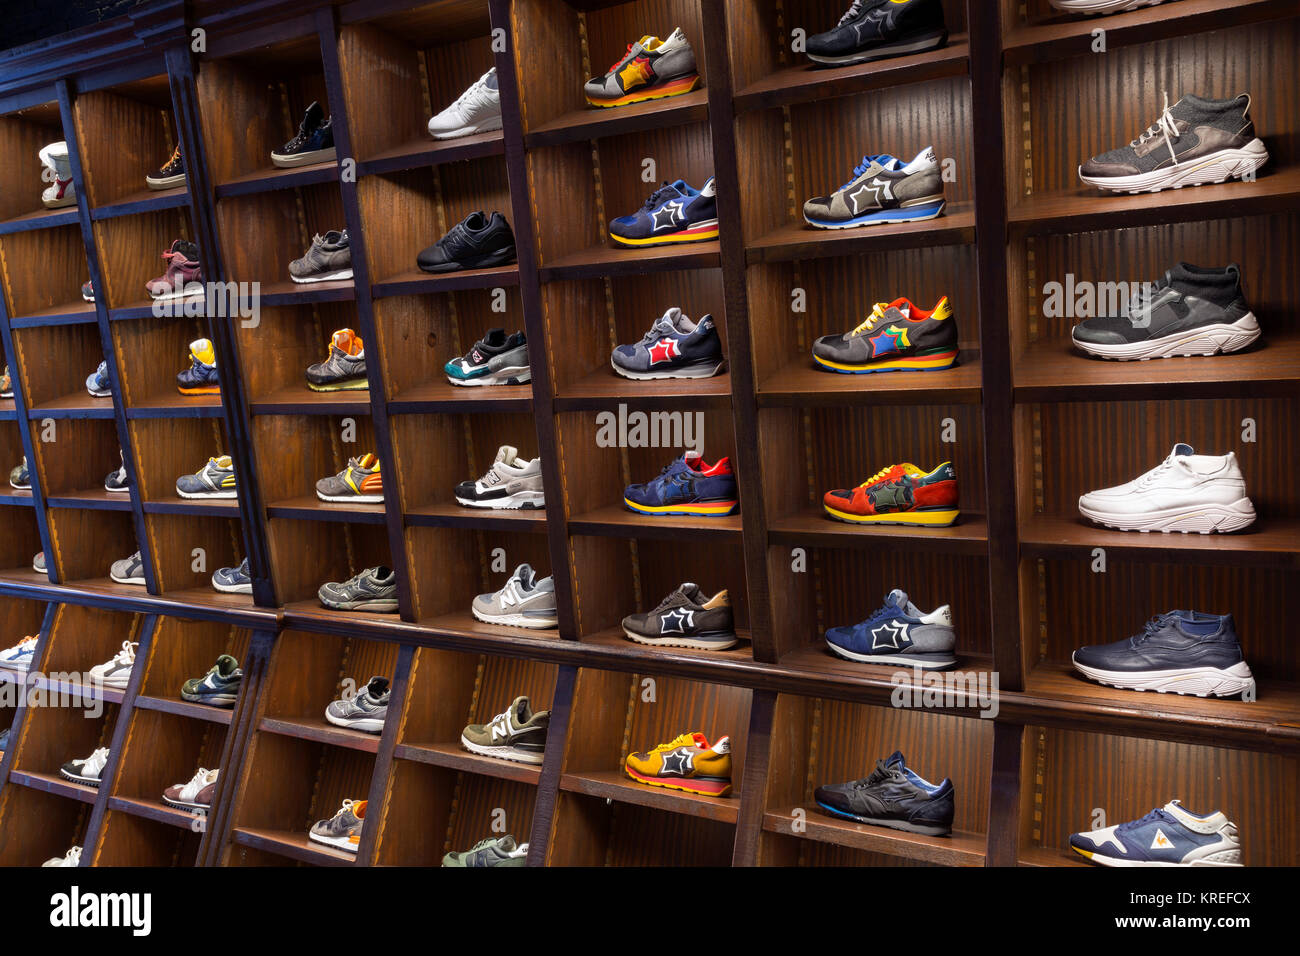 Definición regalo escala Sneakers shoes in shelves of a store, Milano, Italy Stock Photo - Alamy